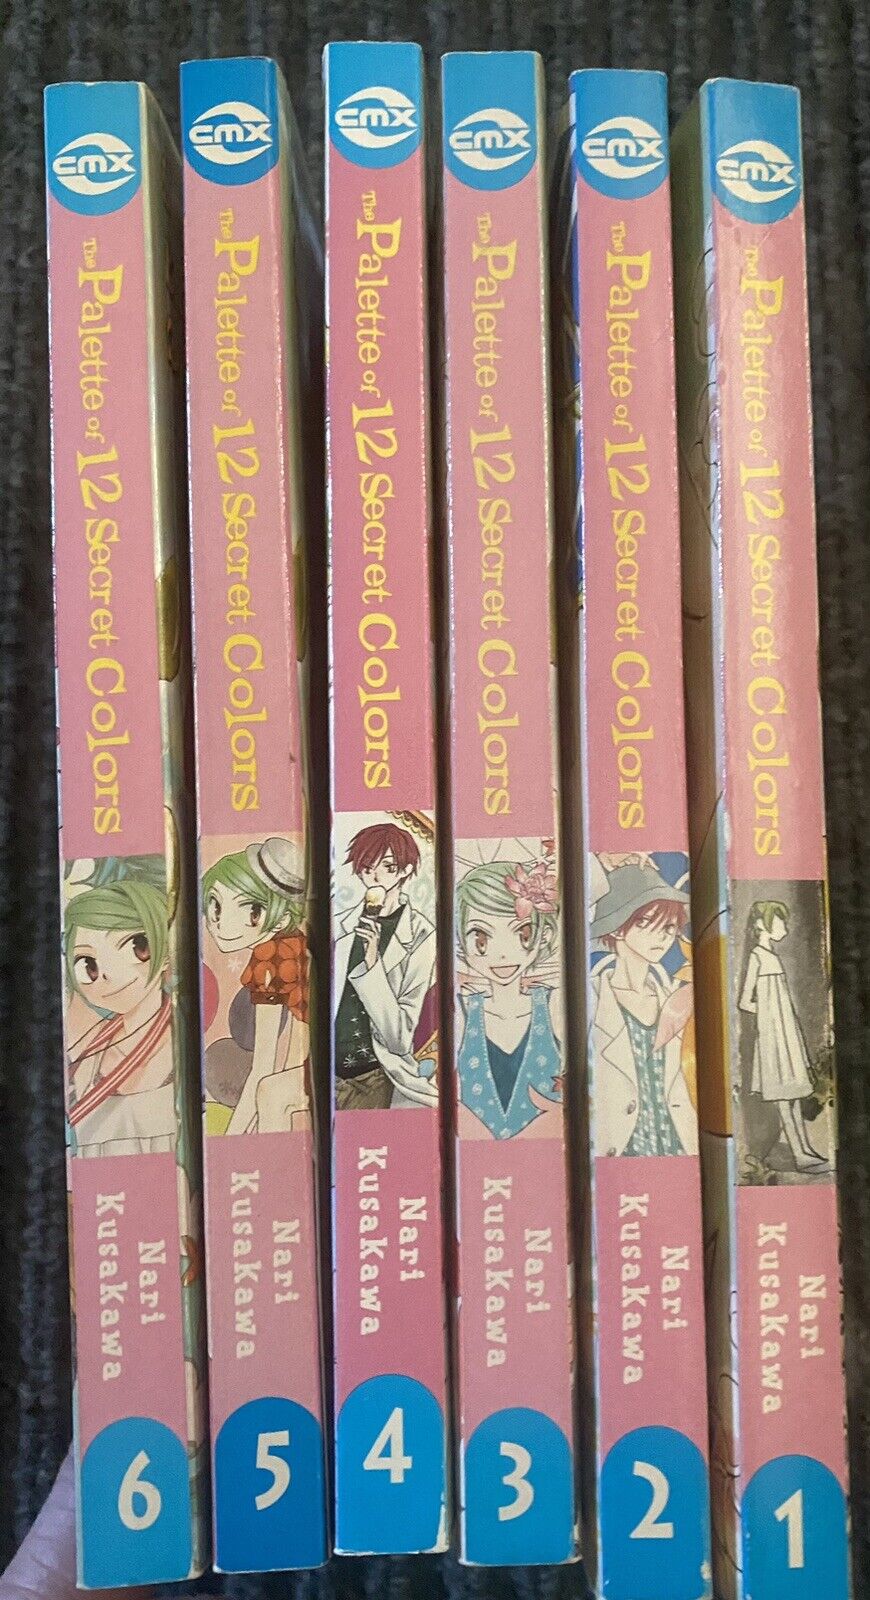 Palette of 12 Secret Colors Complete English Manga by Nari Kusakawa Vol 1-6